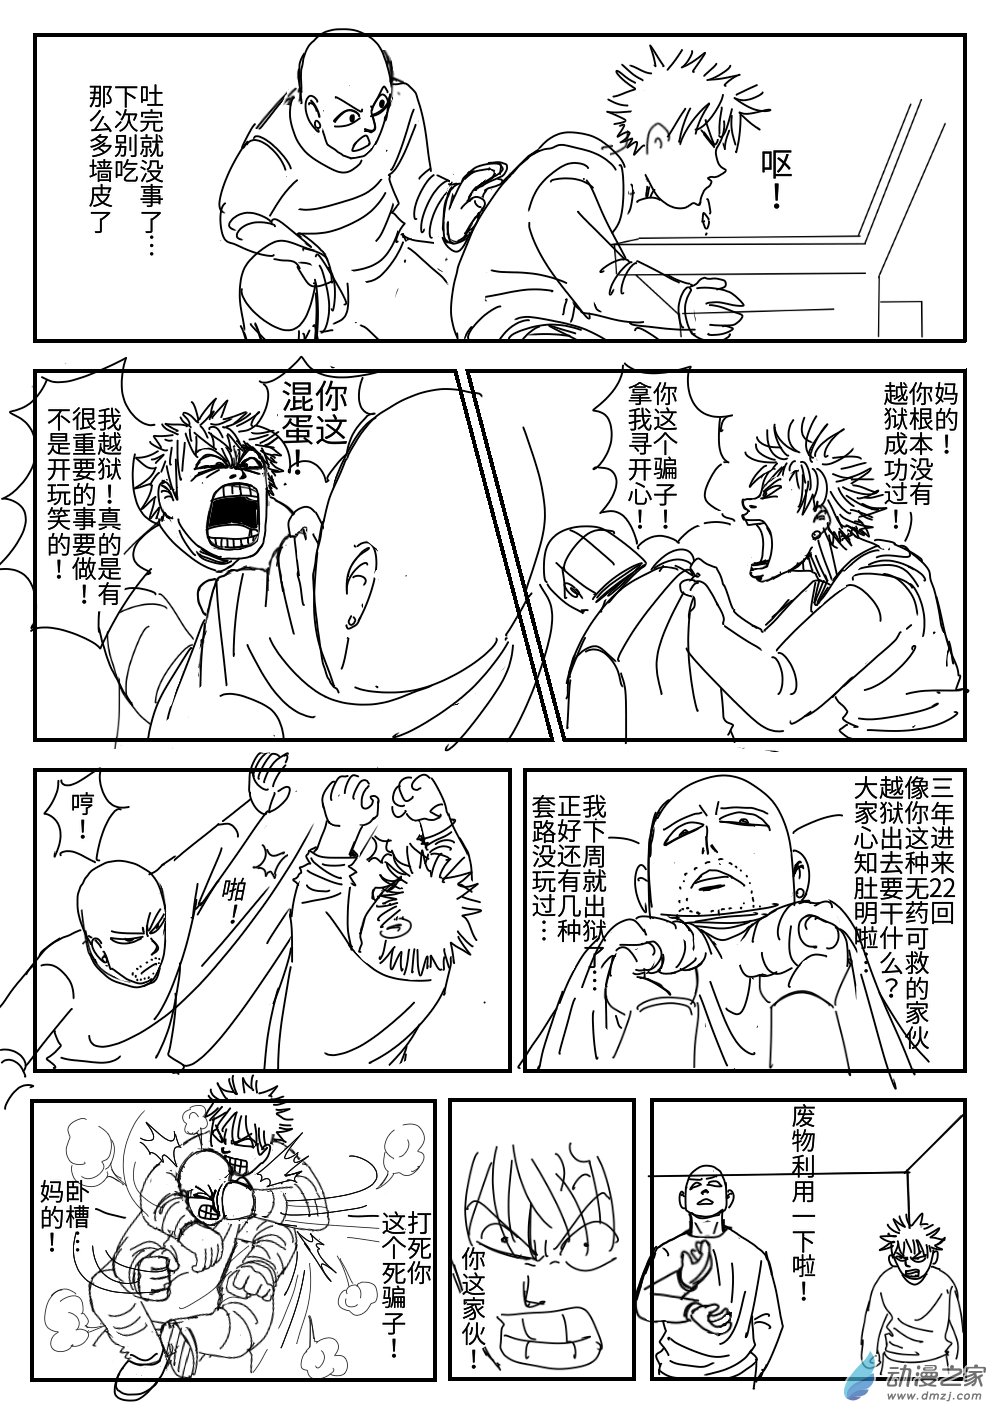 K神的短篇漫畫集 - 04 越獄 - 4